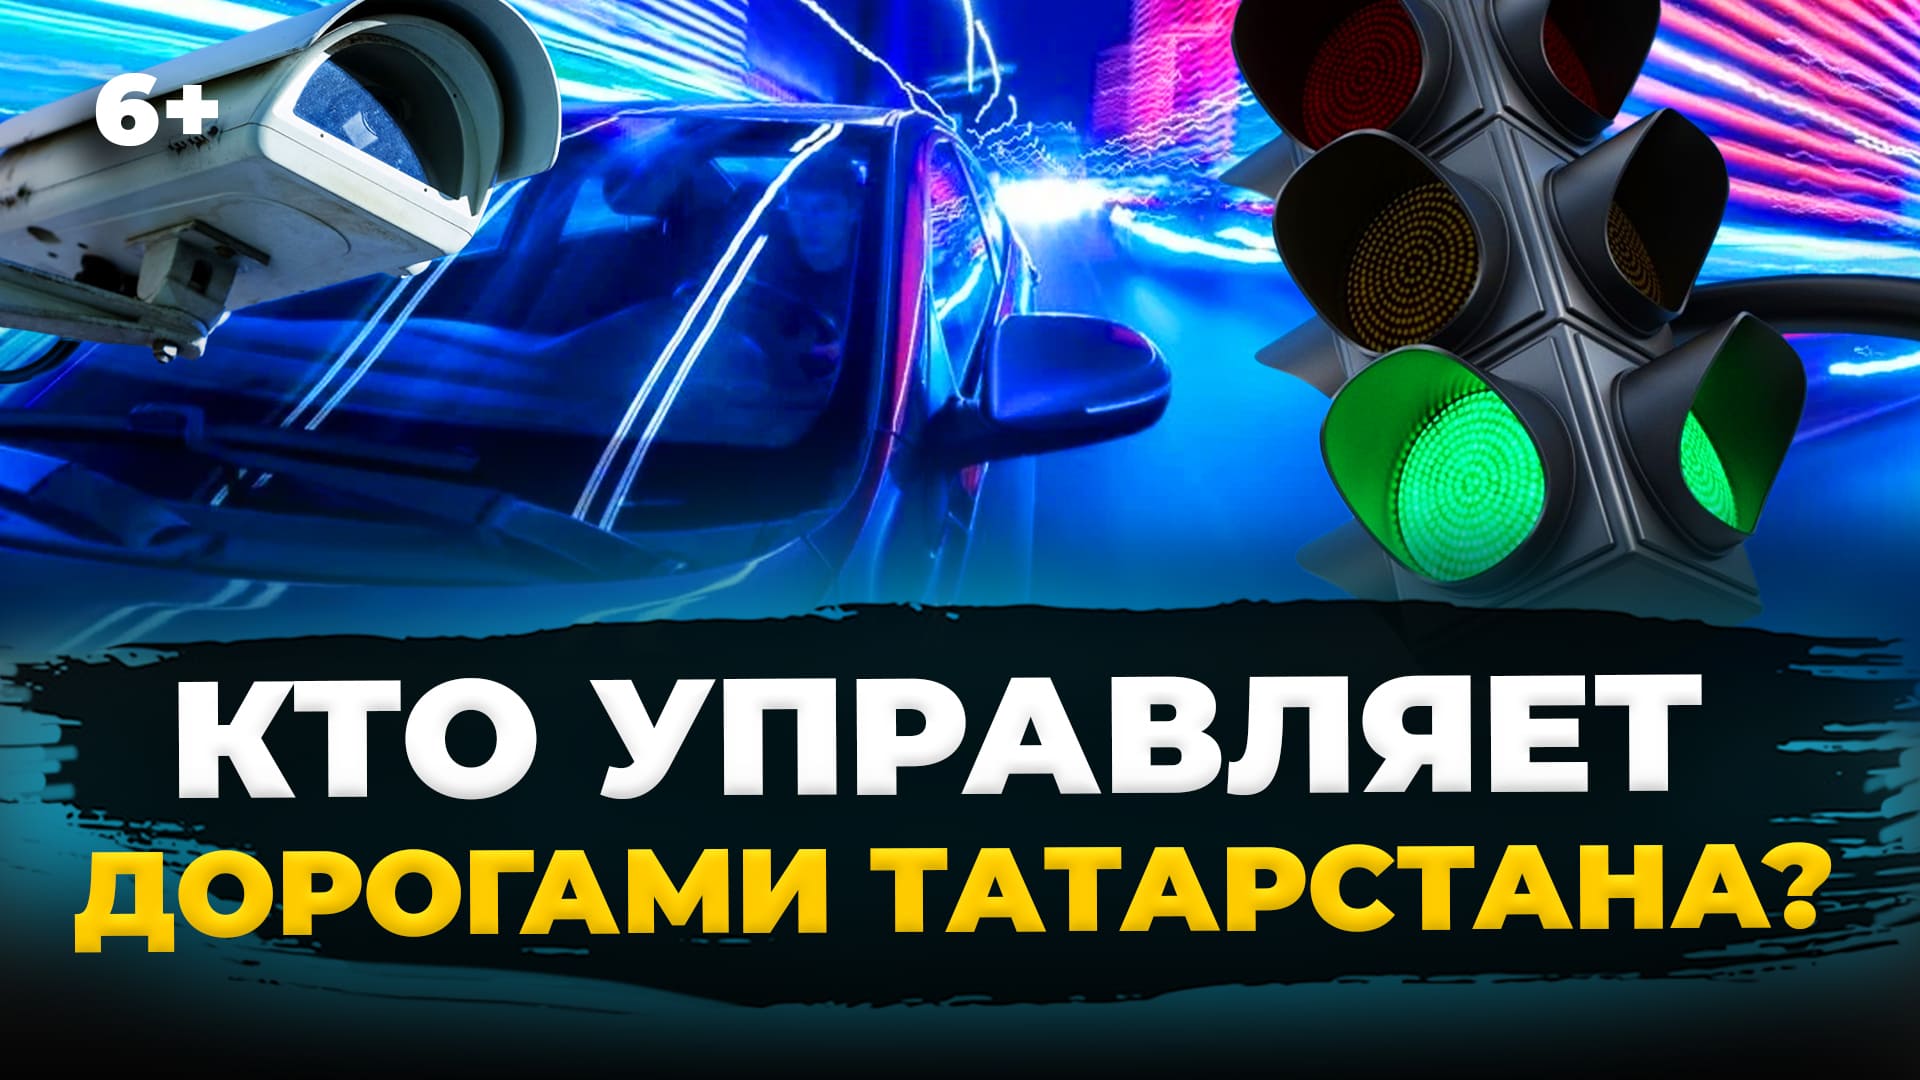 Как устроены дороги в Татарстане? Камеры фиксации нарушений, интеллектуальная транспортная система